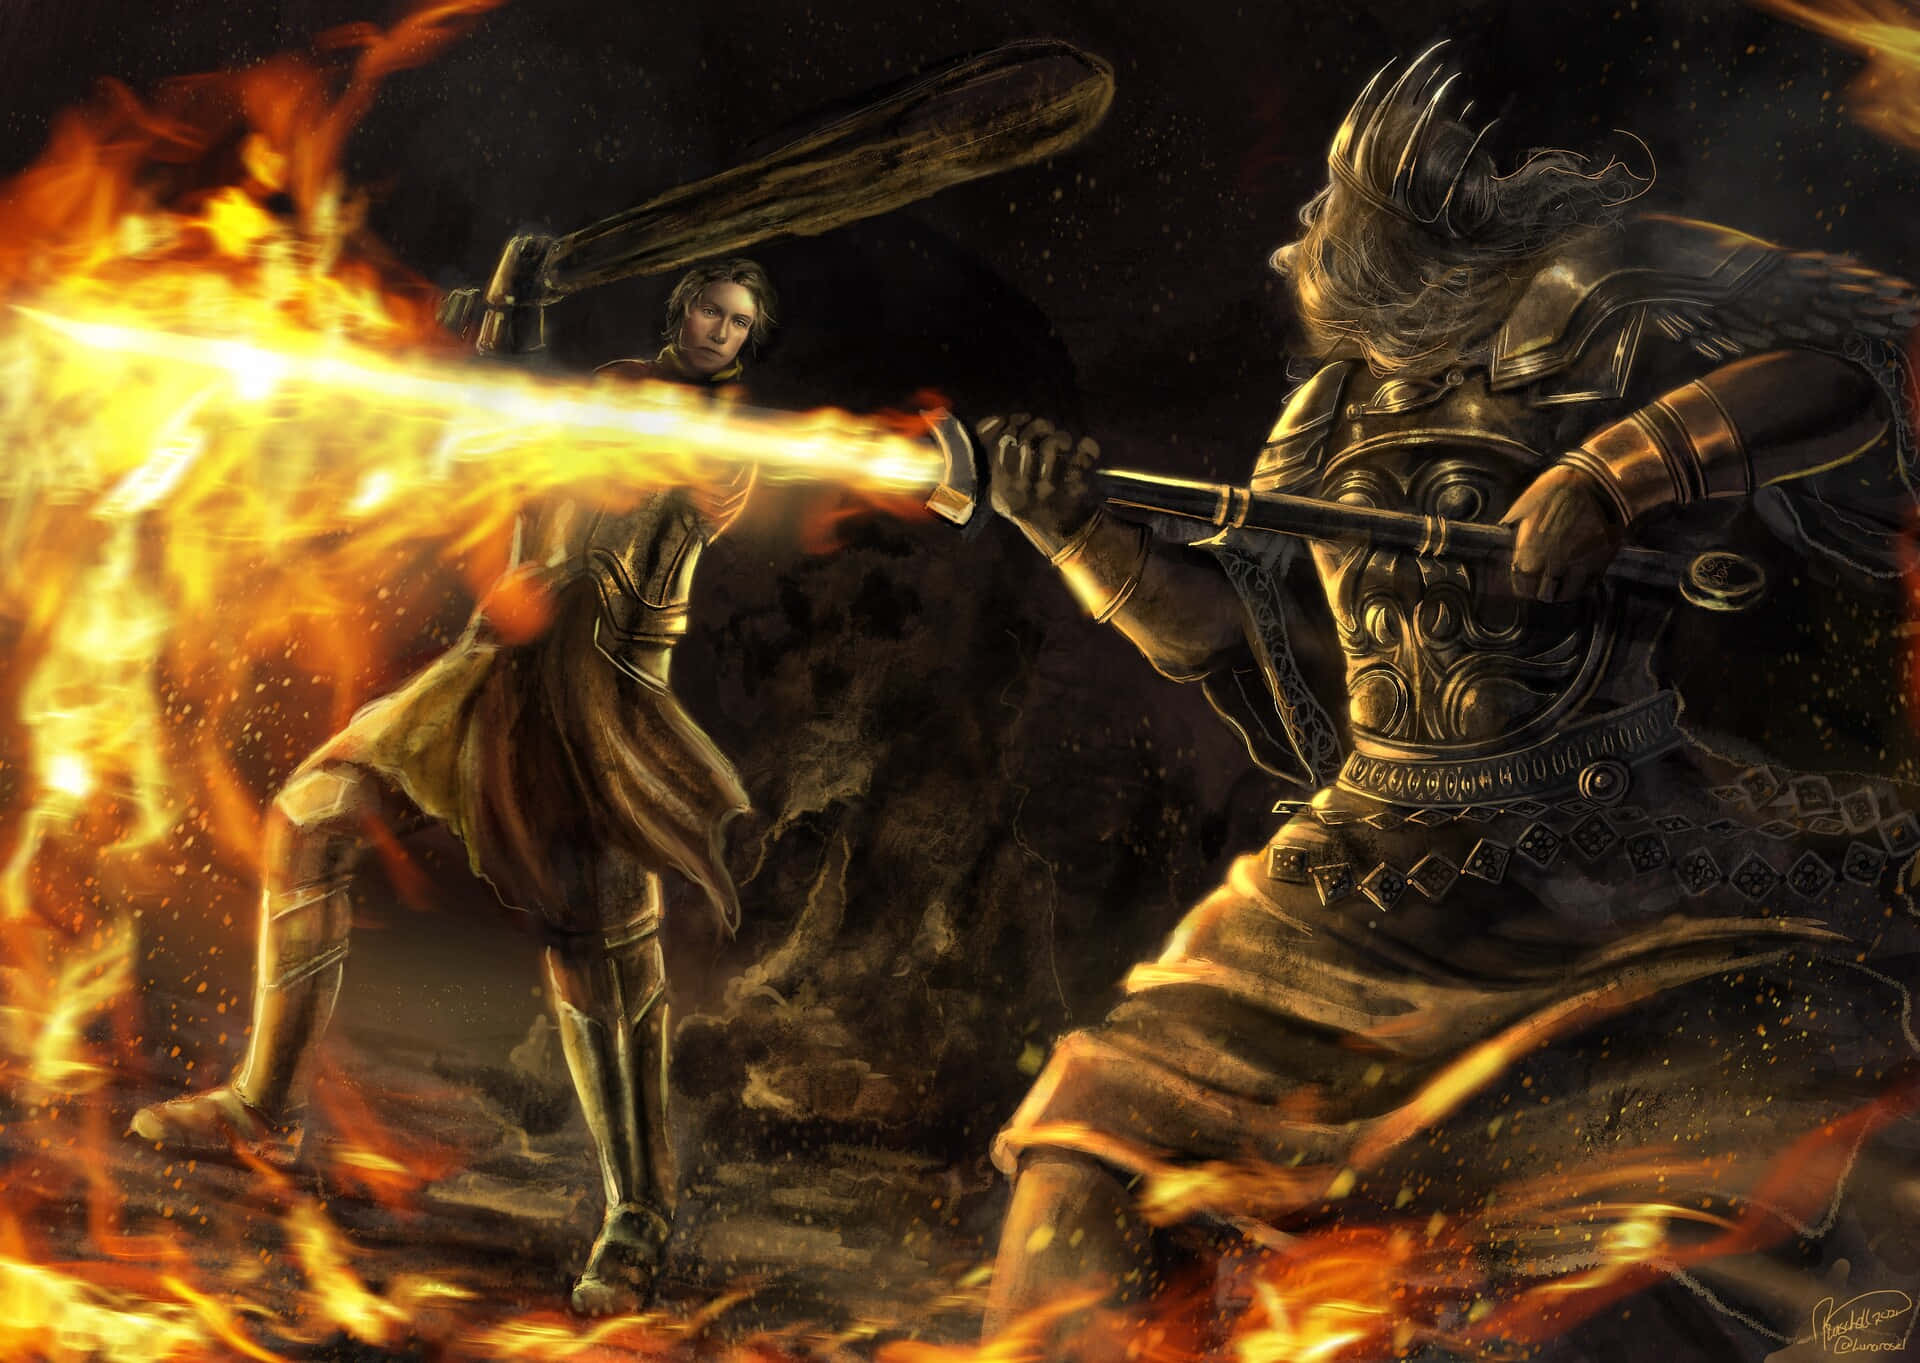 The mighty Gwyn, Lord of Sunlight, in a fiery stance, ready for battle in Dark Souls. Wallpaper